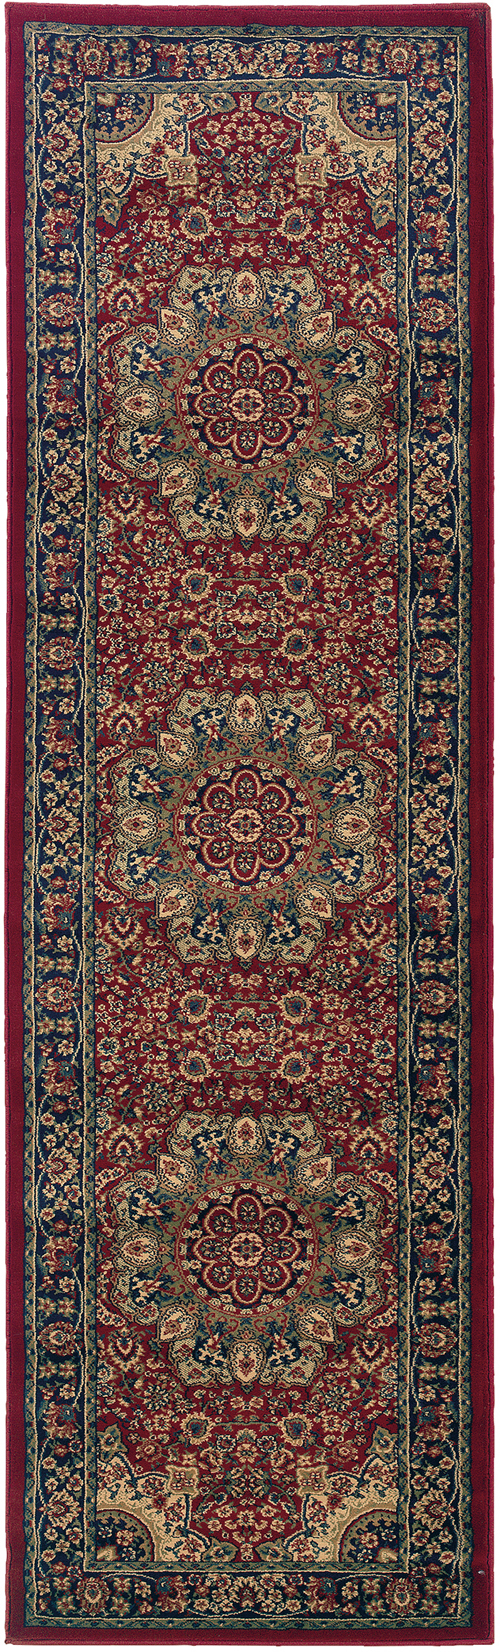 Oriental Weavers ARIANA 116R3 Red Rug